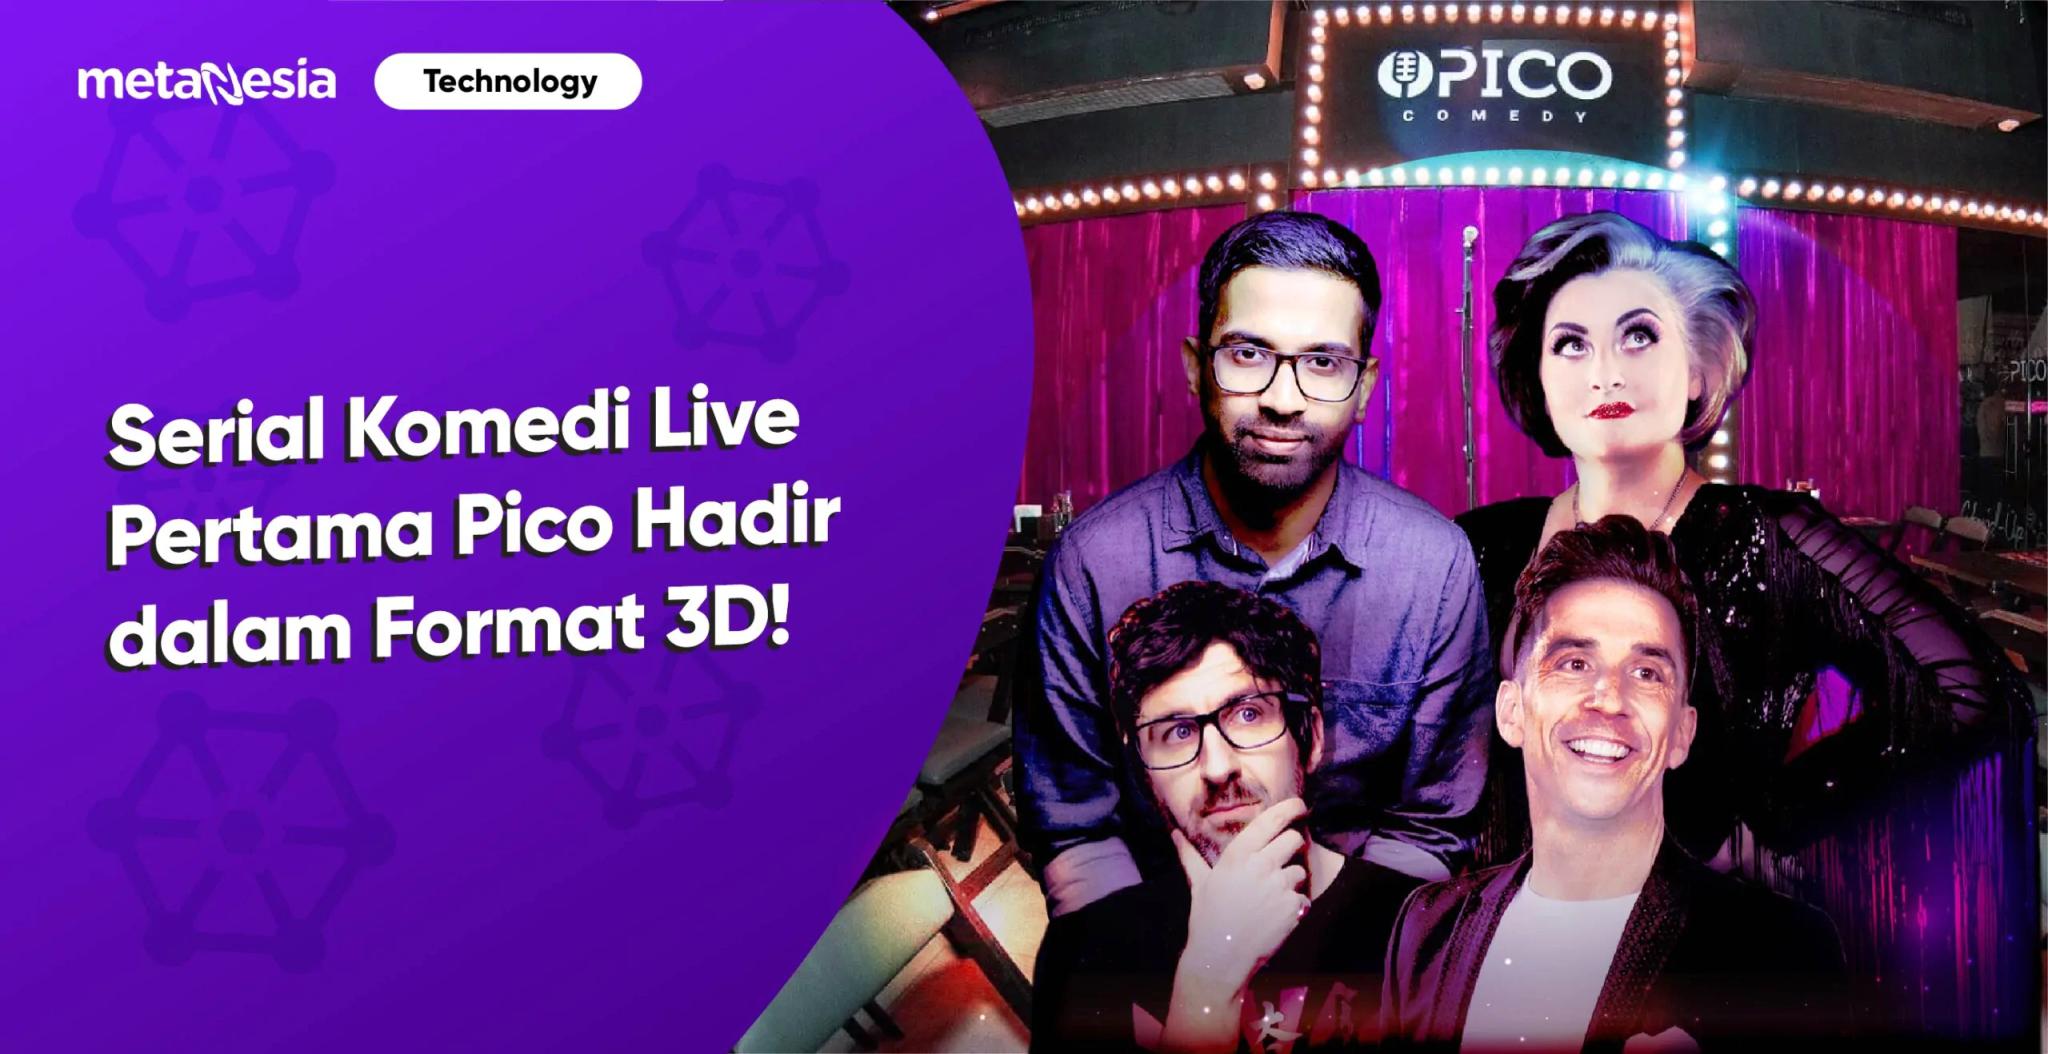 Serial Komedi Live Pertama dari Pico akan Hadir dalam Format 3D dan Resolusi 8K!